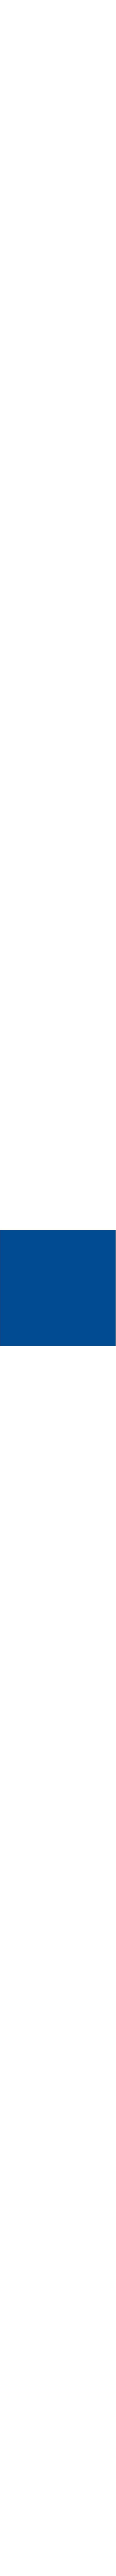 580-76E Rétroréfléchissant bleu clair en 1.22m